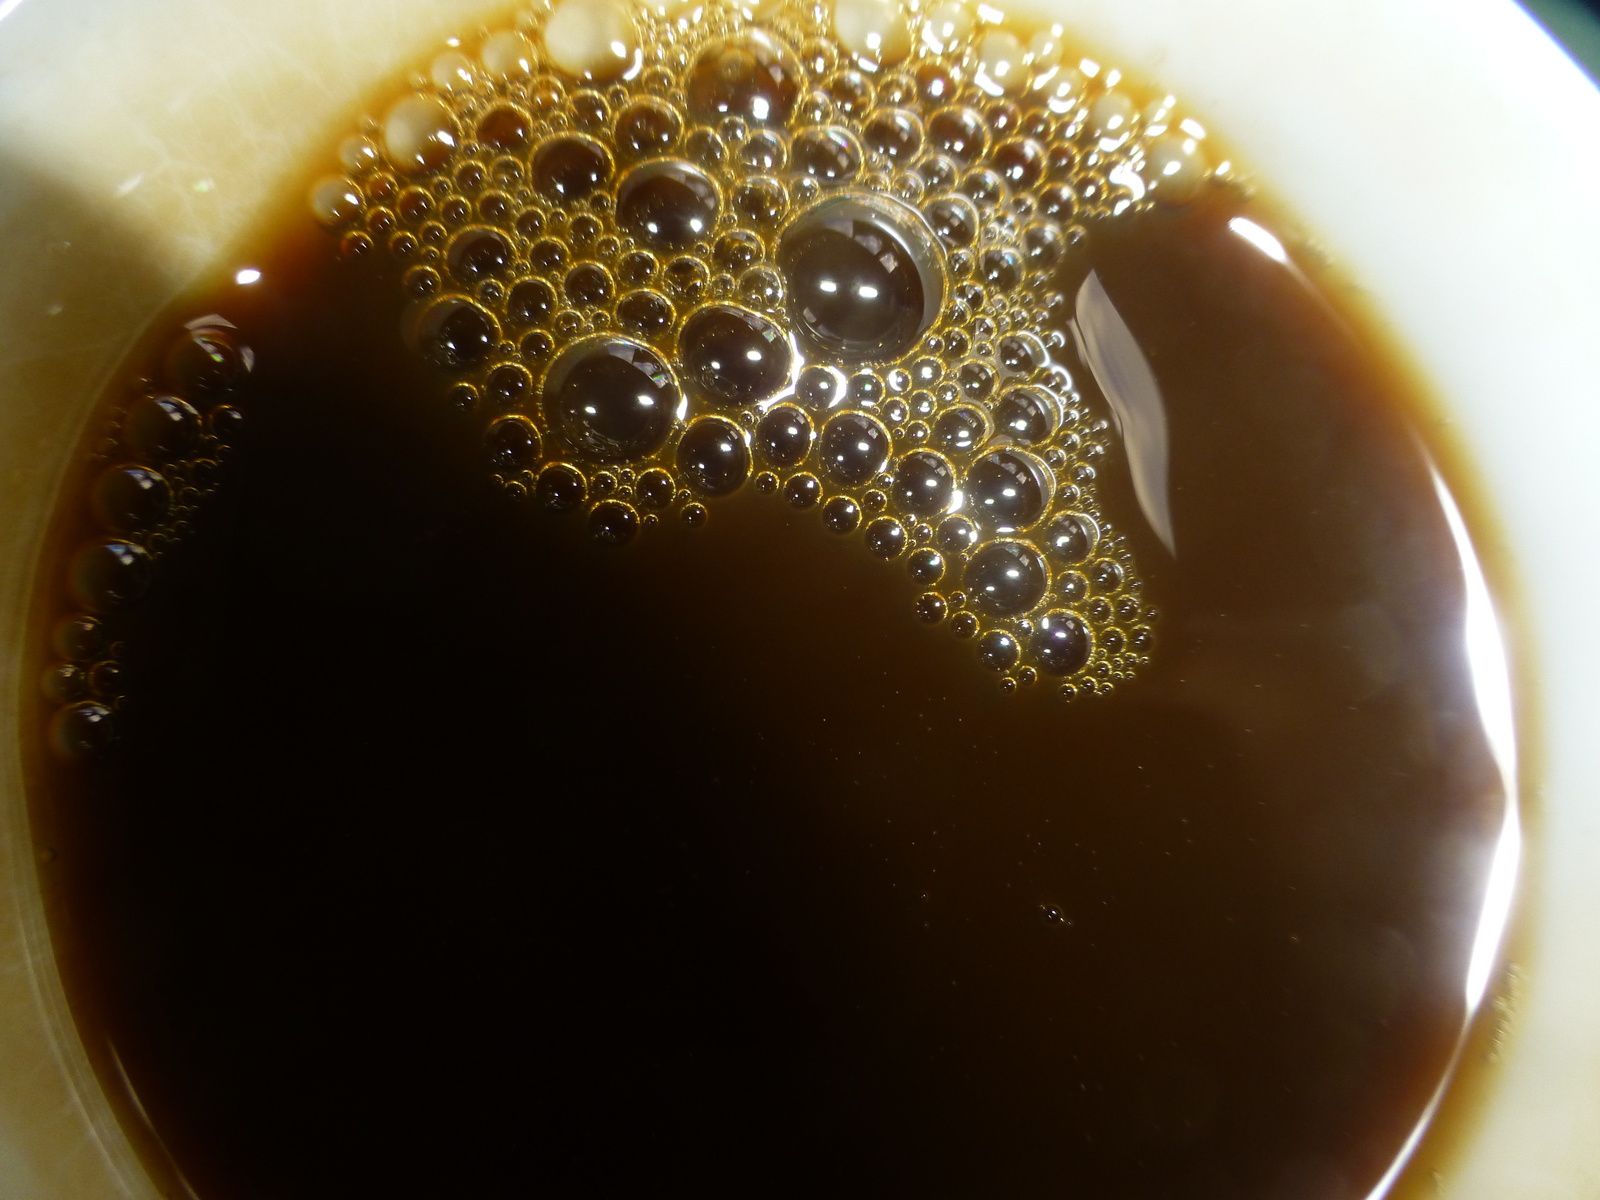 La nébuleuse du café